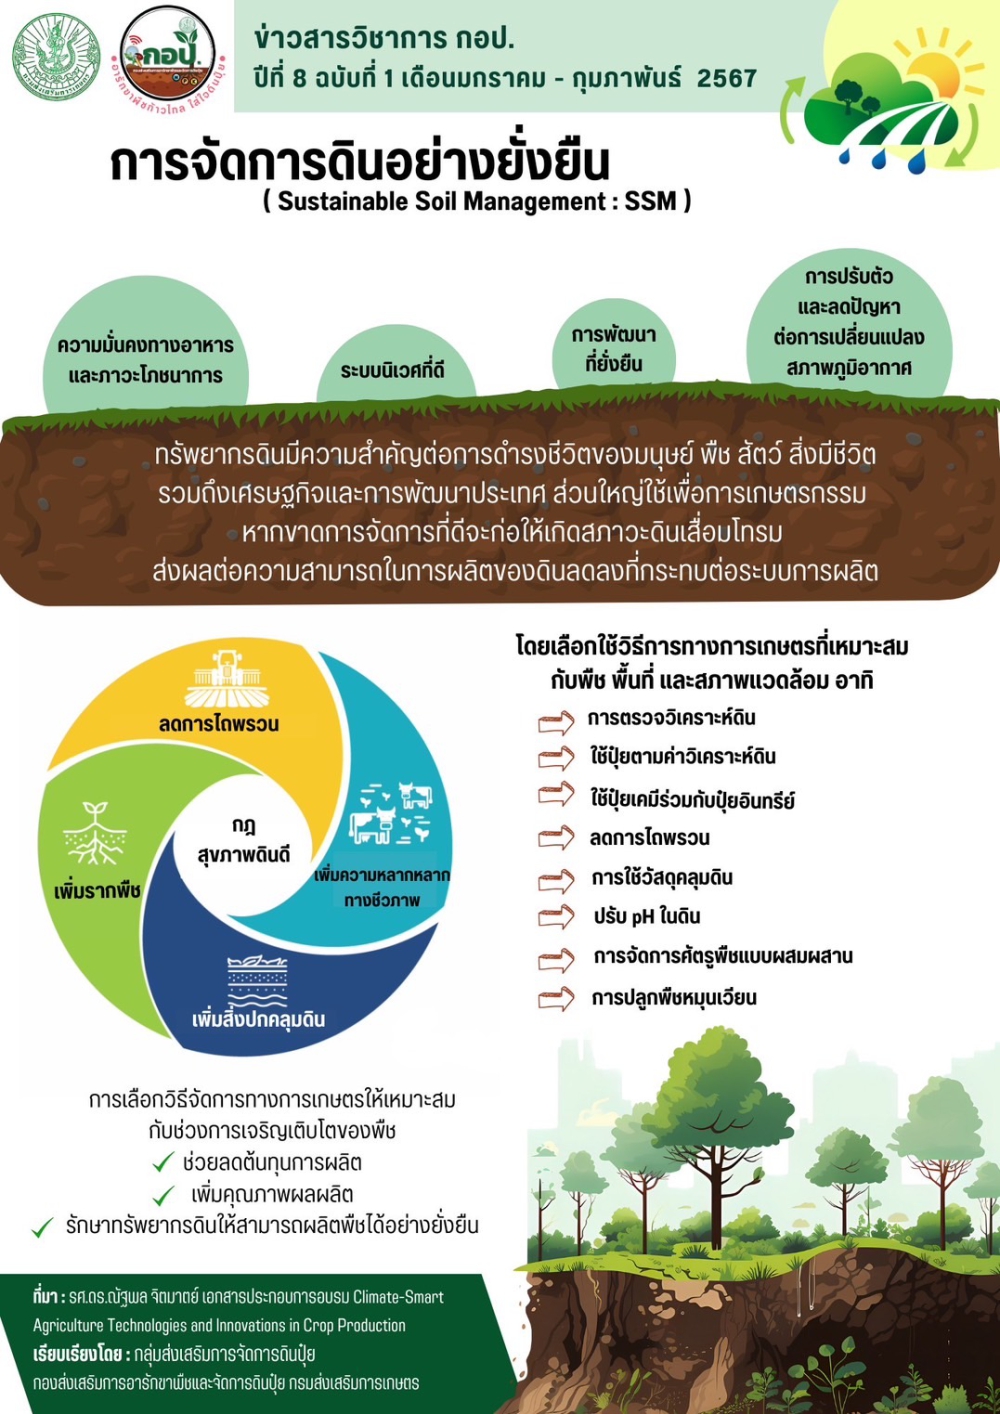 การจัดการดินอย่างยั่งยืน (Sustainble Soil Management: SSM)